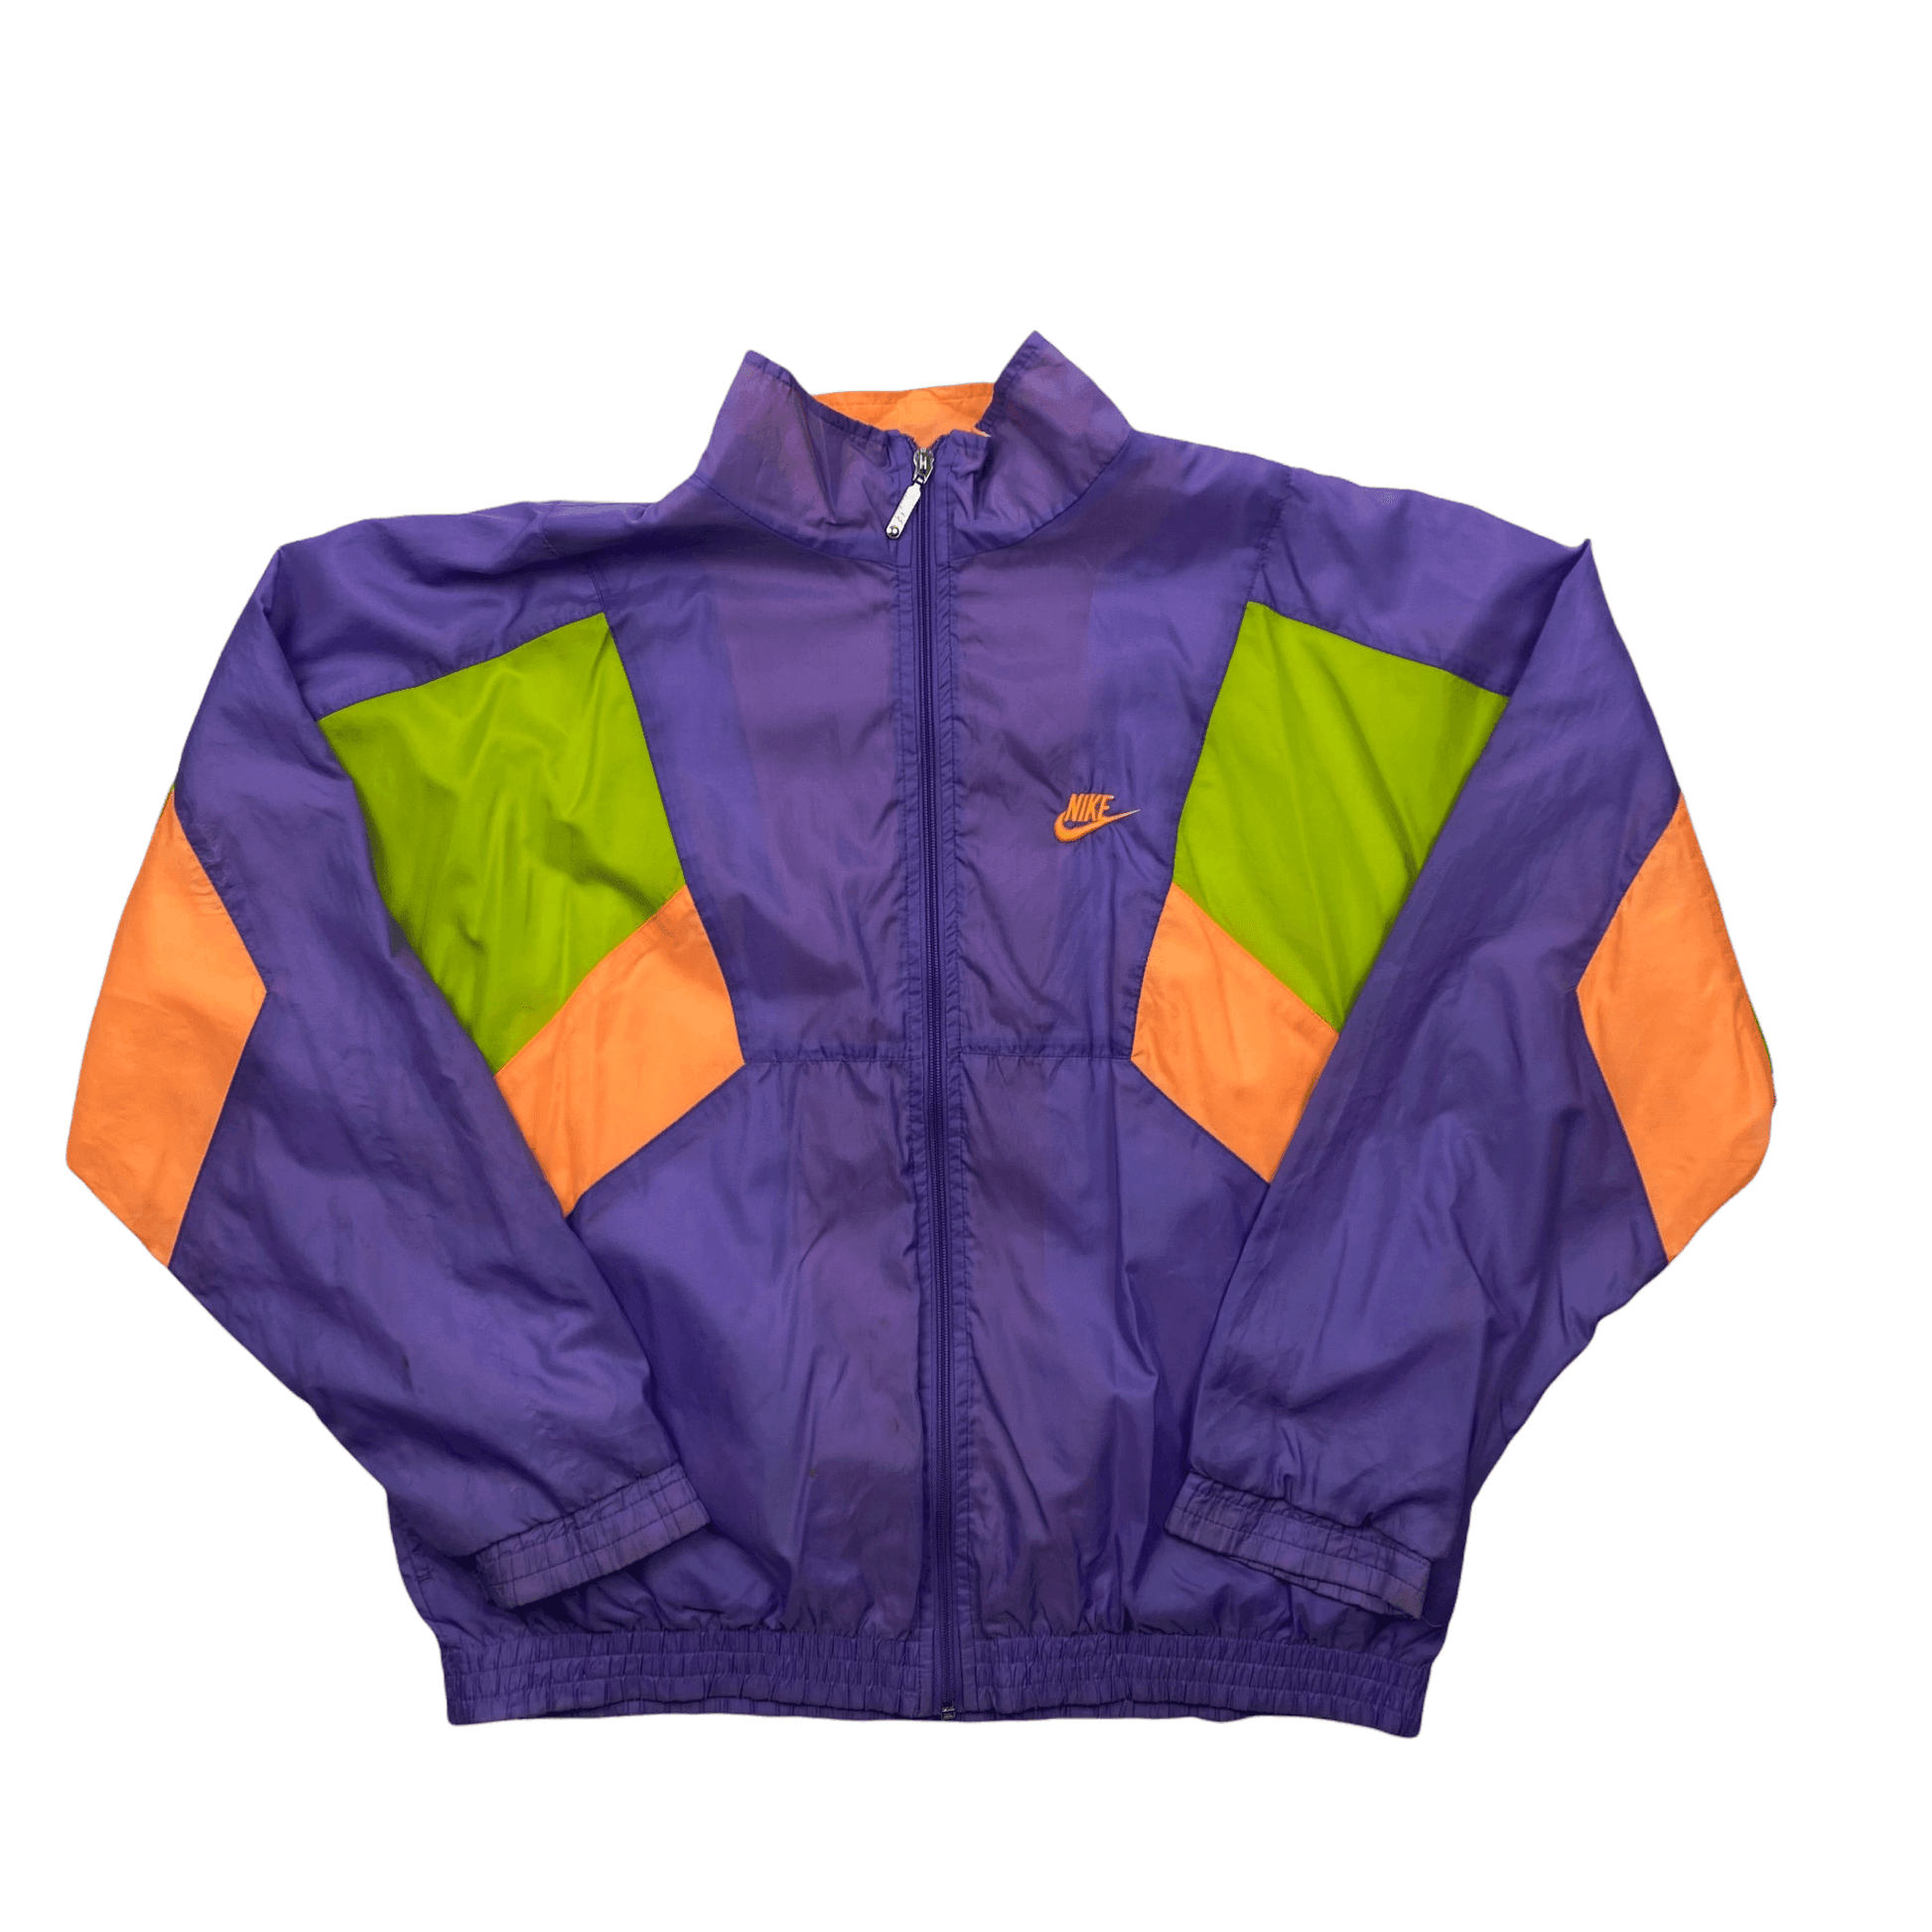 Vintage 90s Purple + Green Nike Waterproof Windbreaker Jacket - Medium - The Streetwear Studio